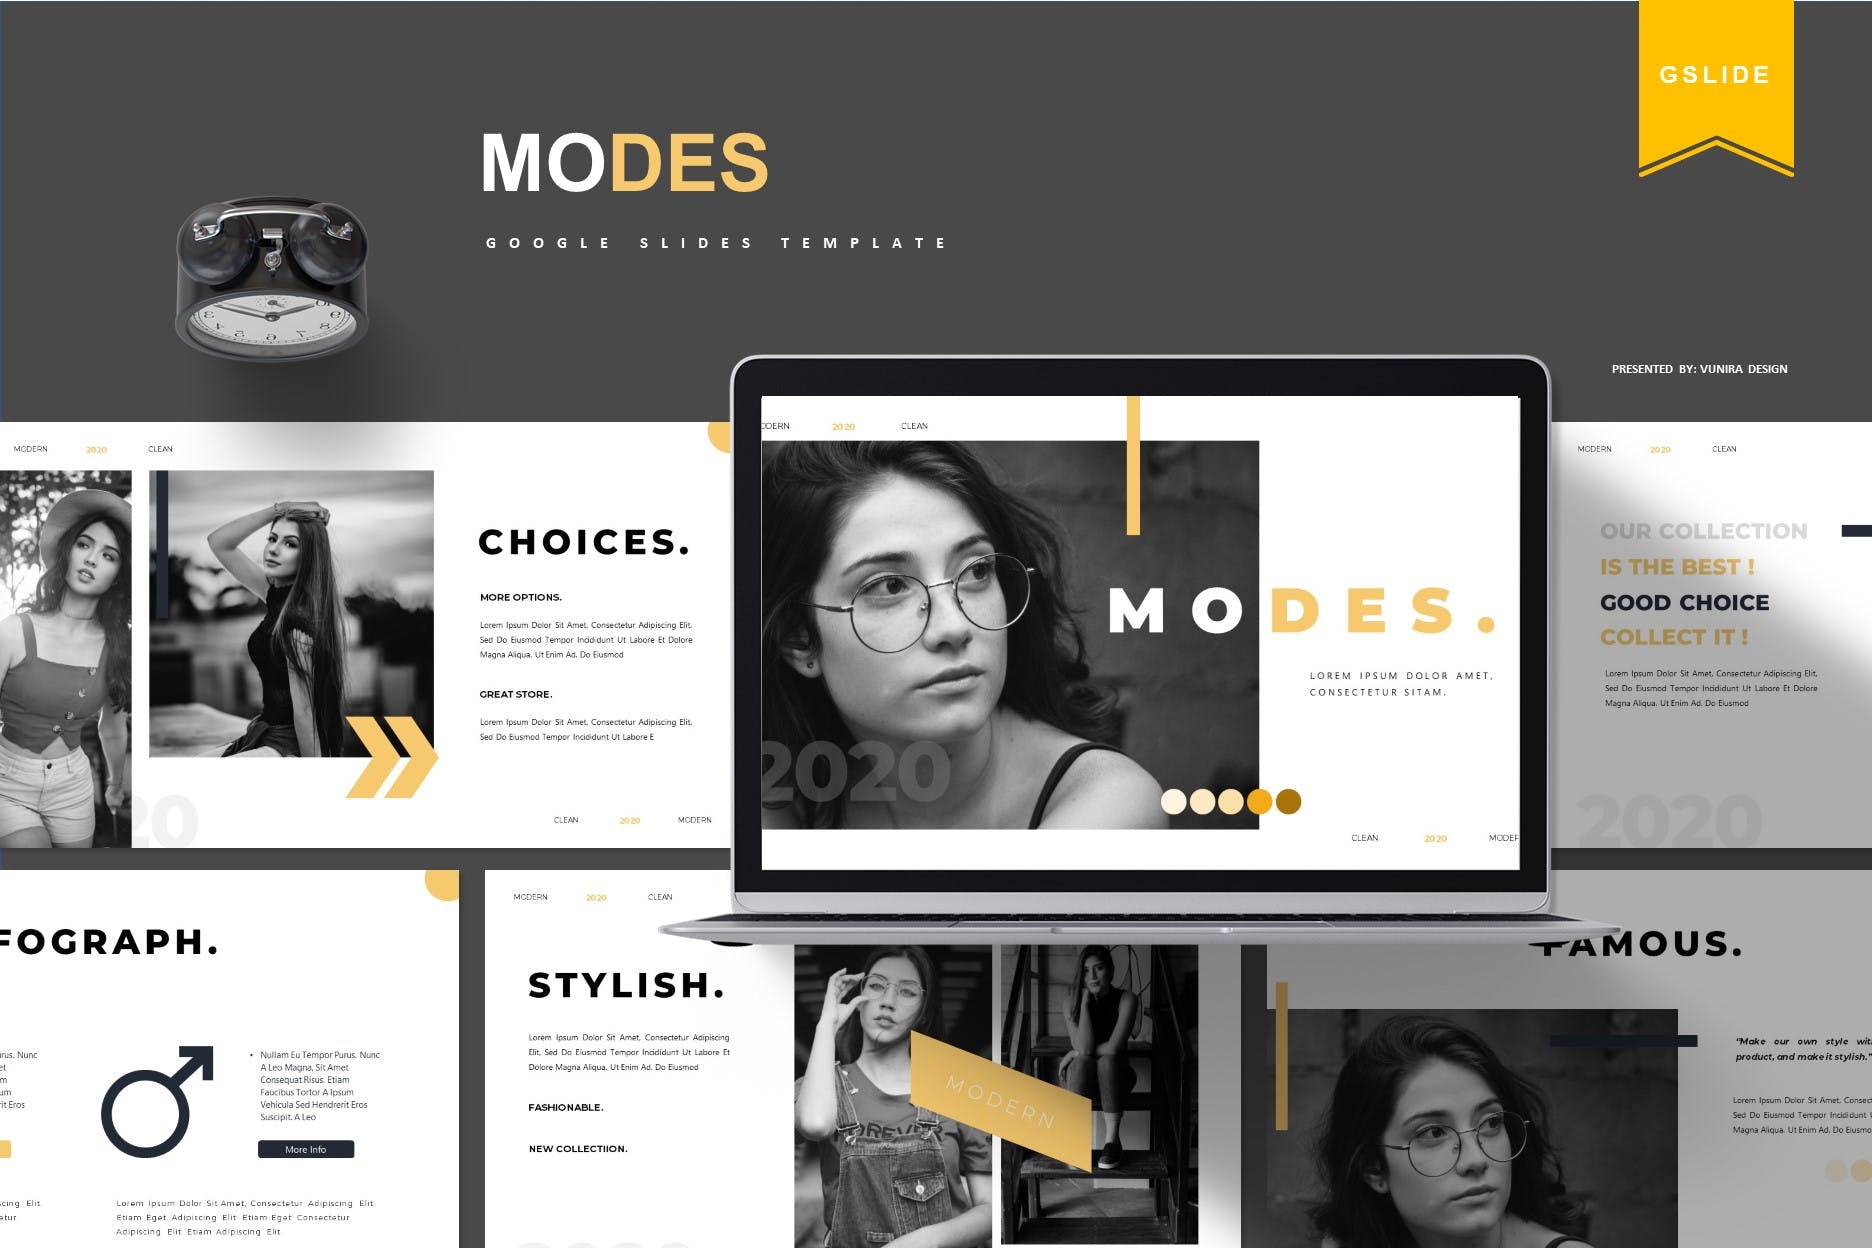 平面模特/创意摄影服推介Google演示模板第一素材精选 Modes | Google Slides Template插图